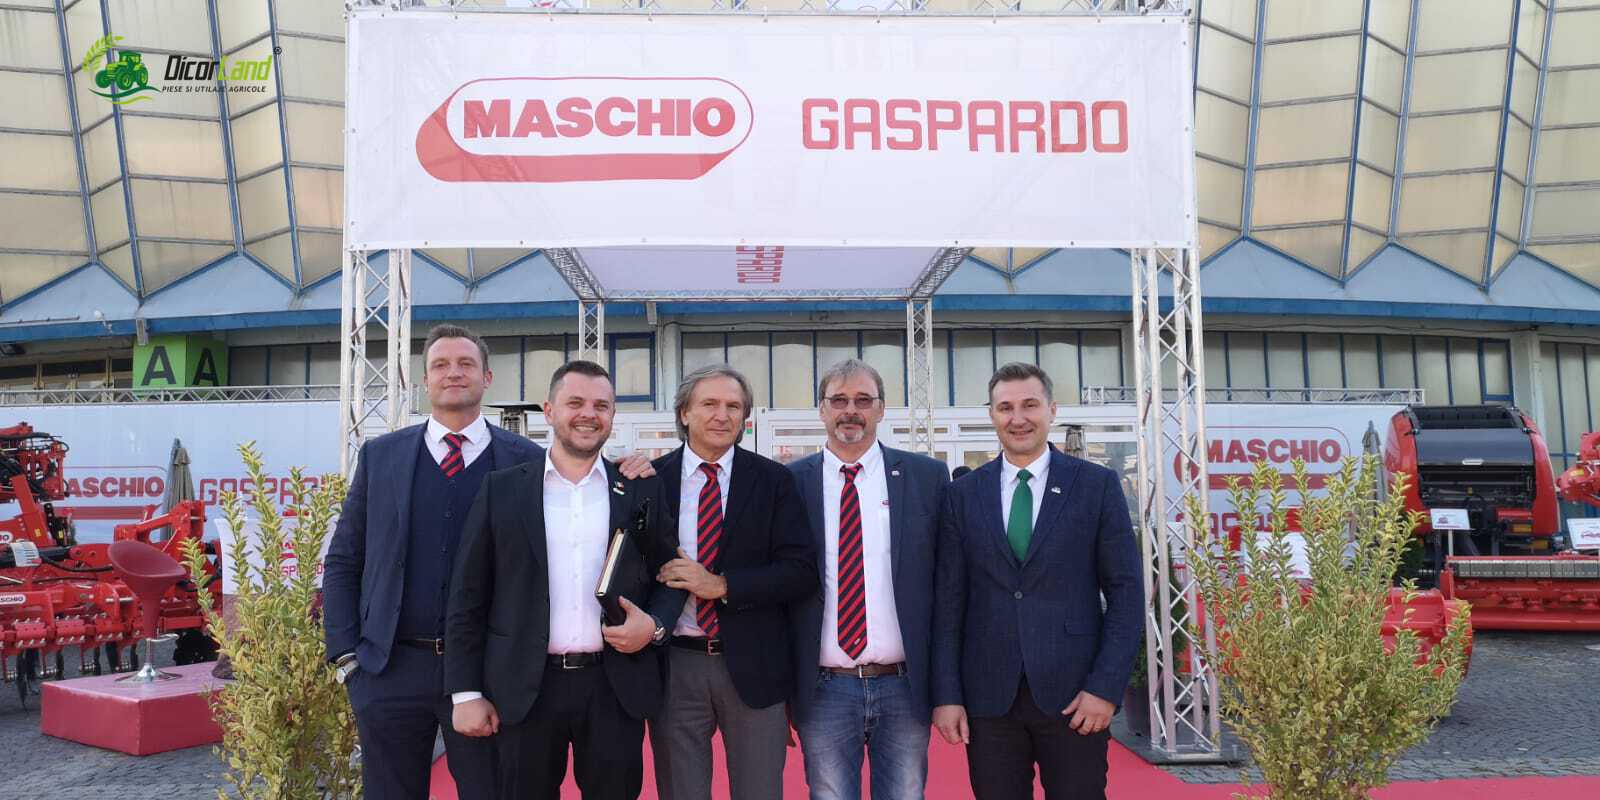 Maschio Gaspardo și Dicor Land – o colaborare de succes - Maschio Gaspardo și Dicor Land - o colaborare de succes - Dicorland